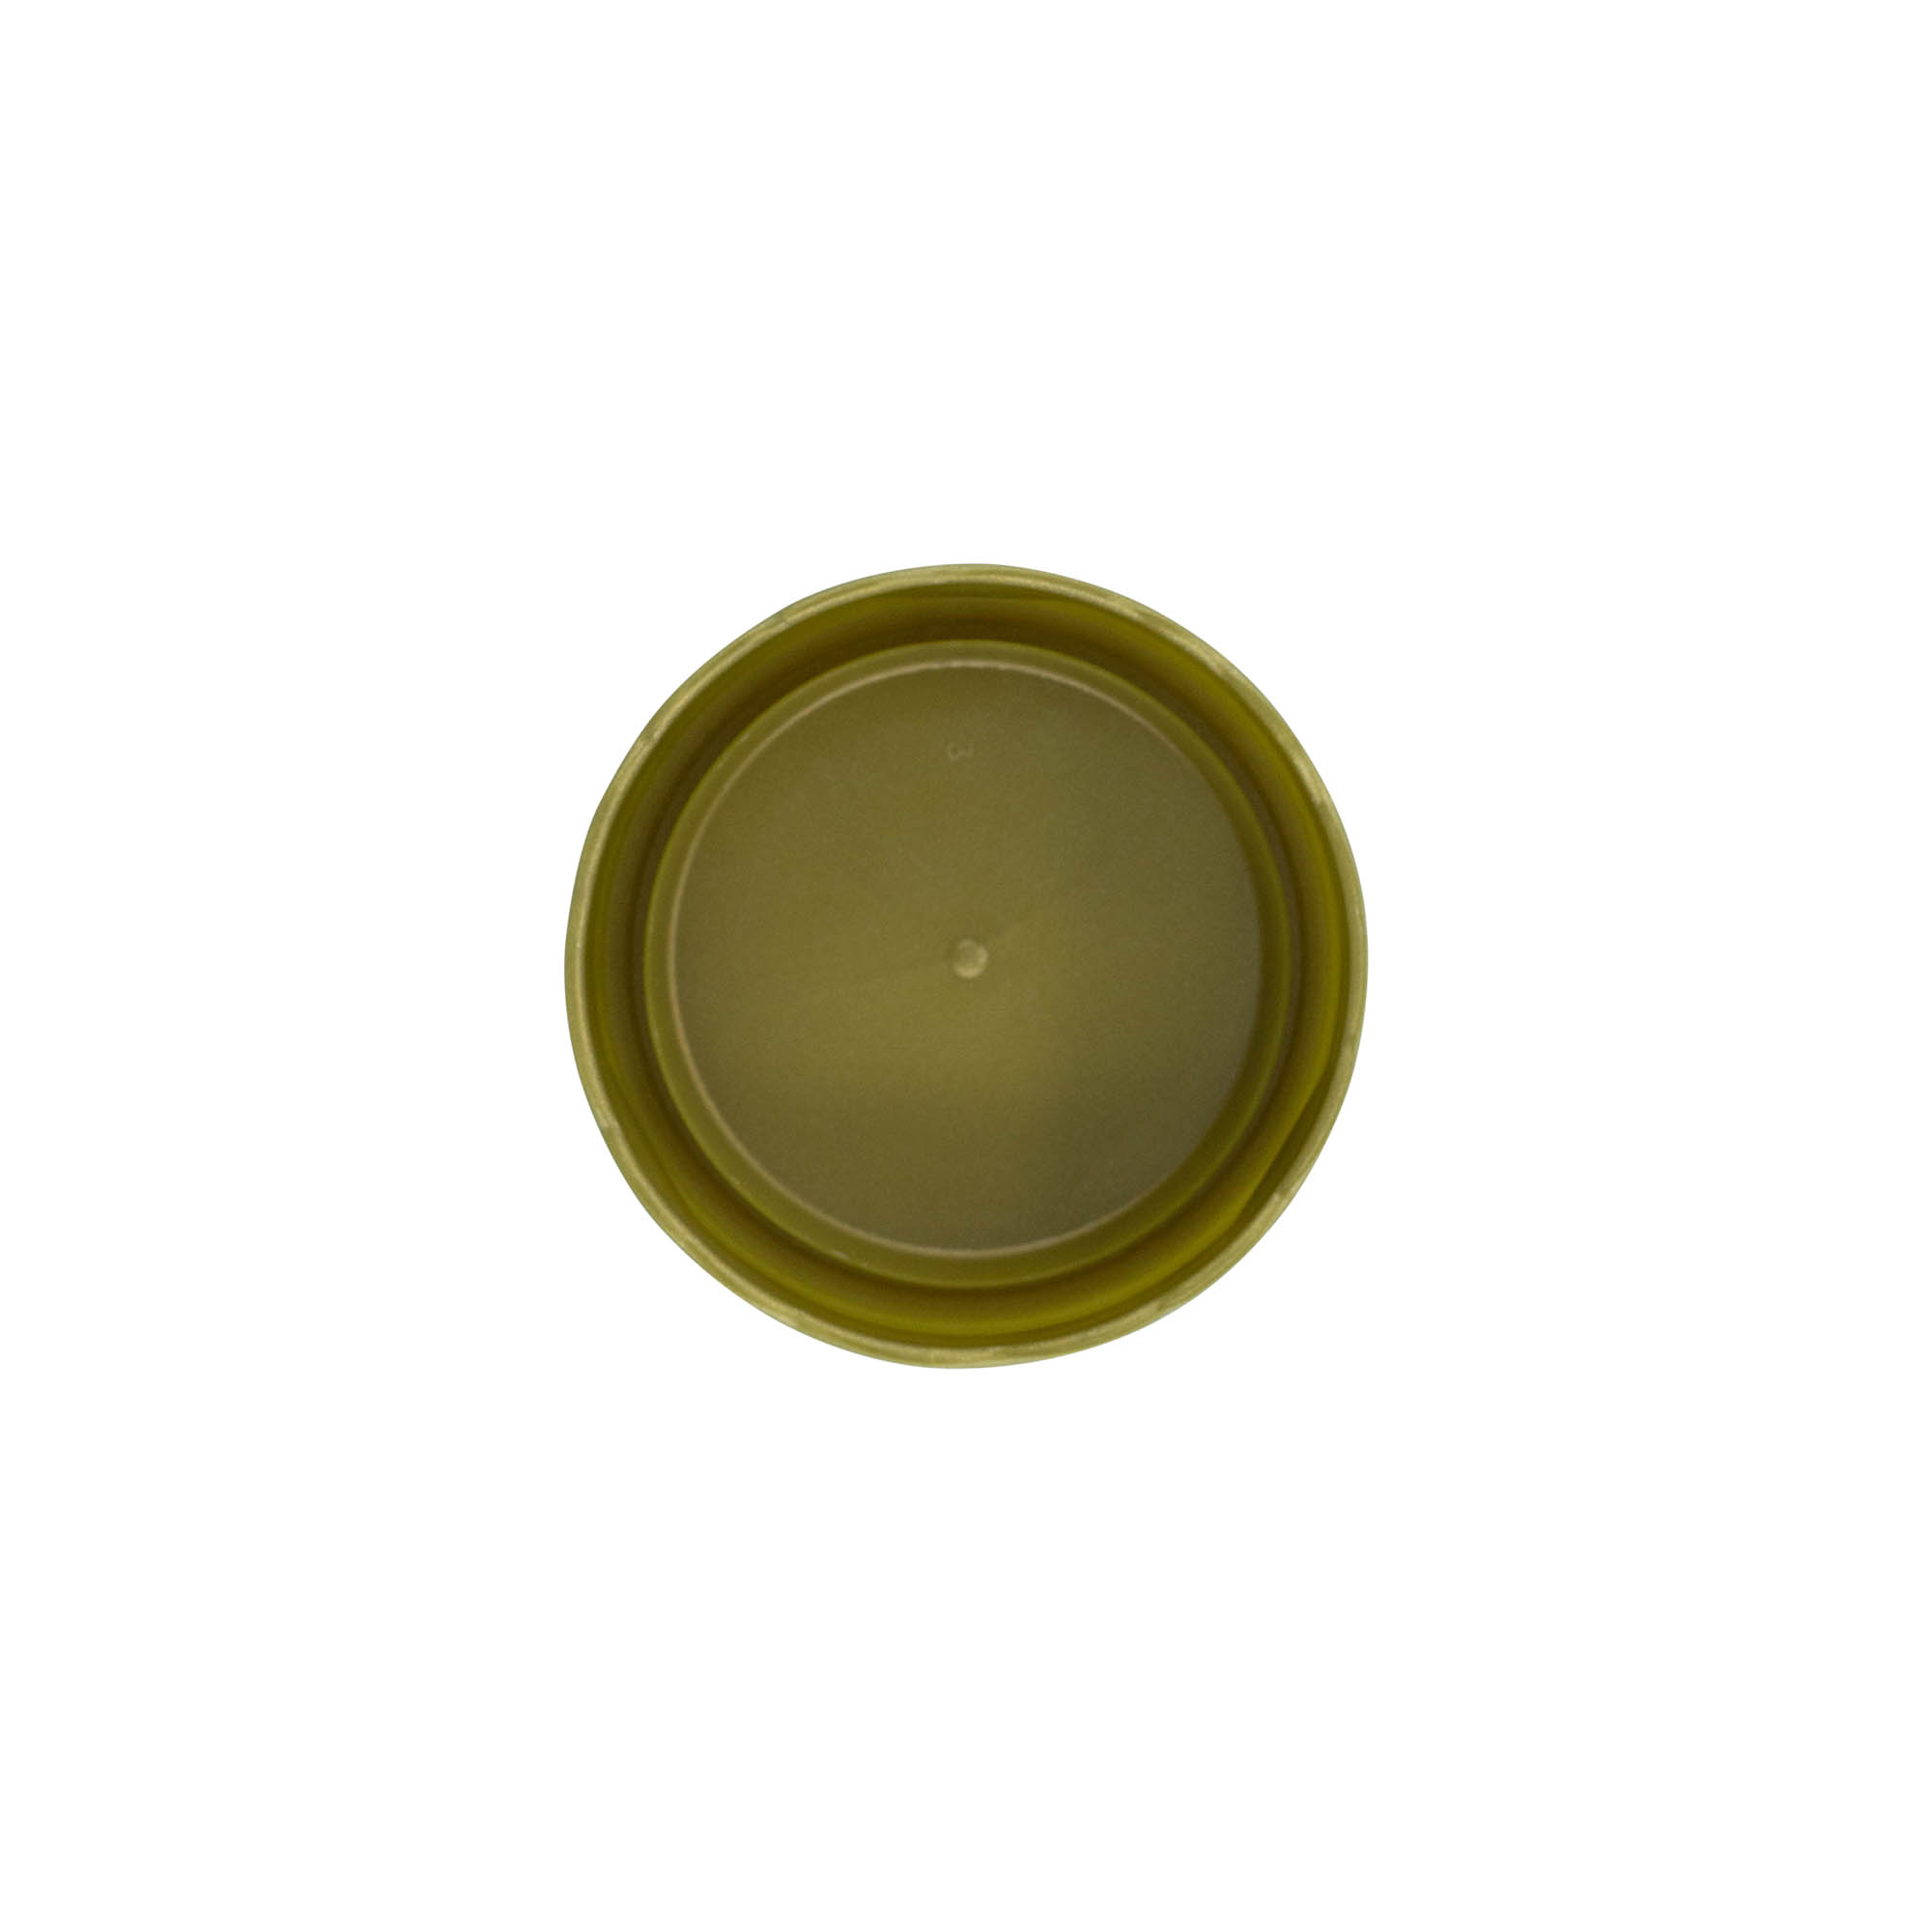 Stulpdeksel voor keramische pot met smalle hals, HDPE-kunststof, goud